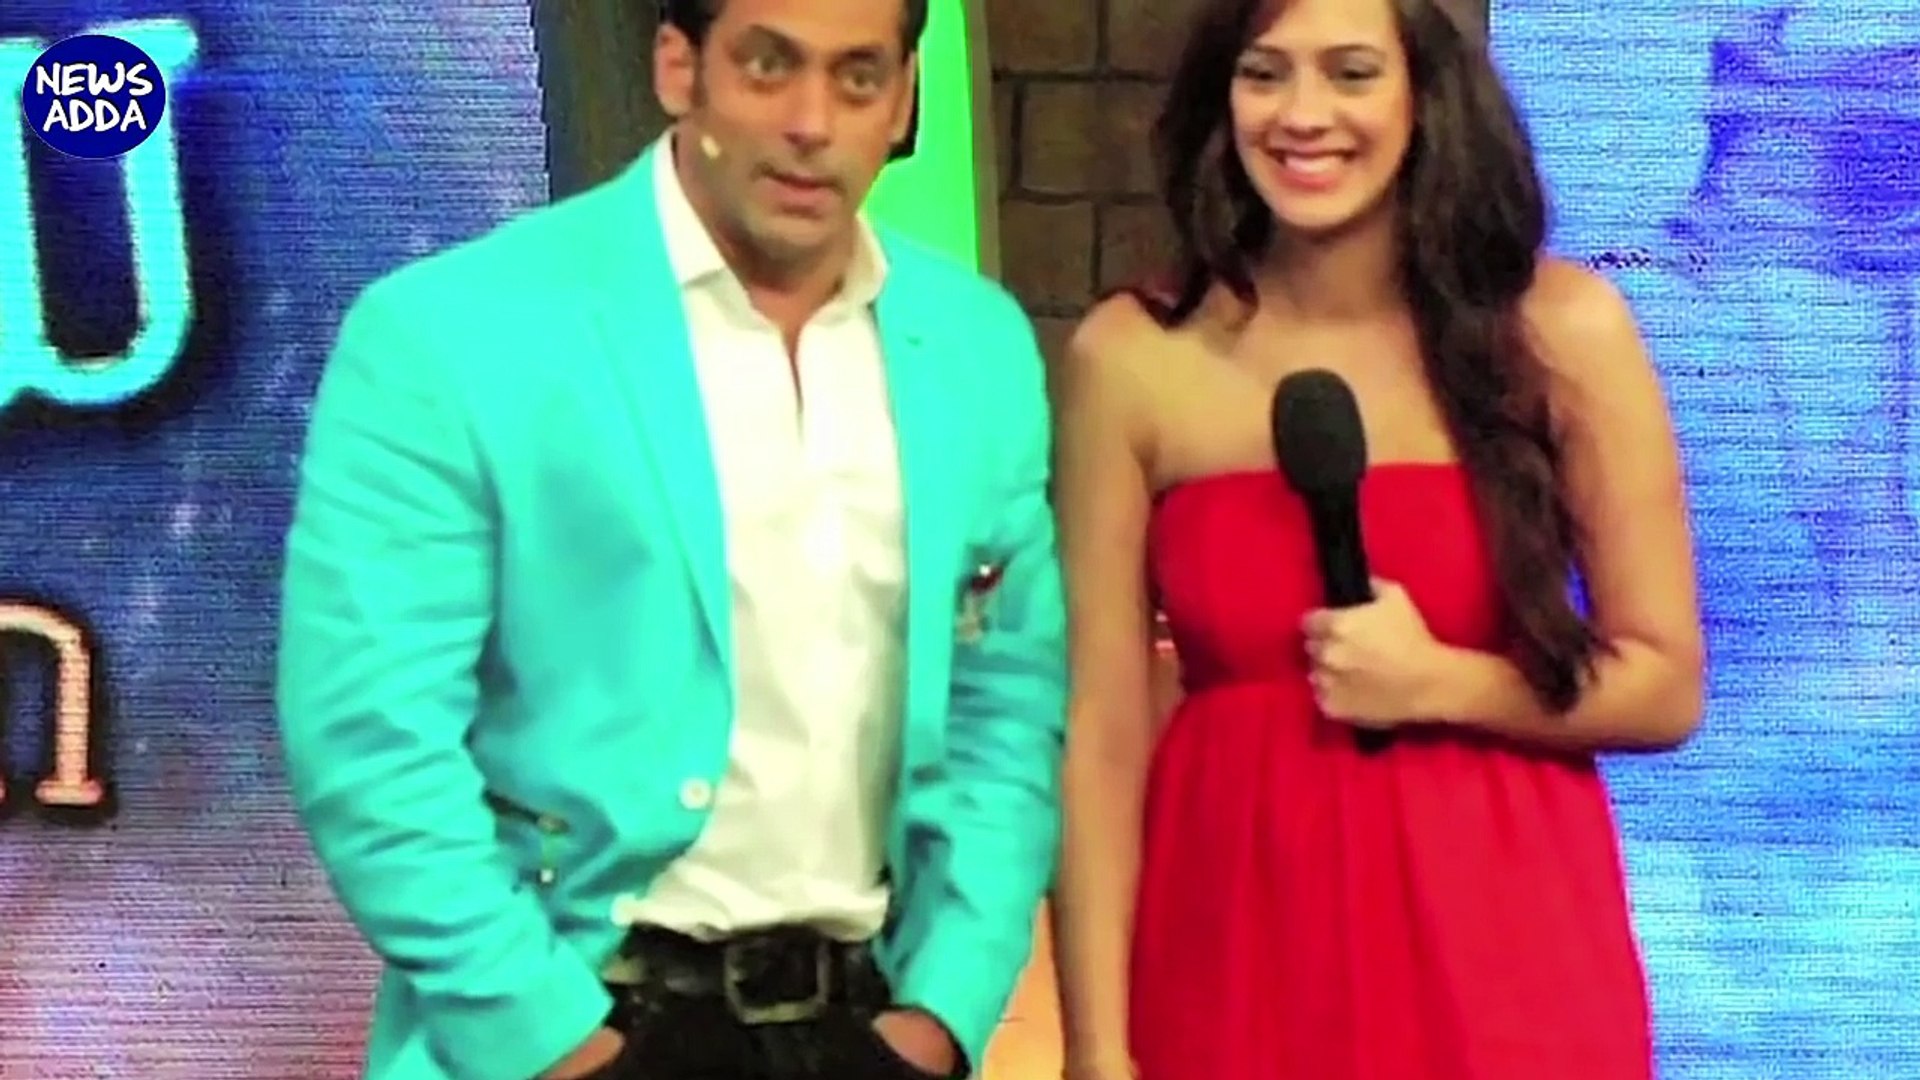 [MP4 720p] Salman Khan Latest Affairs And Girl Friends _ Latest Bollywood News _ Newsadda